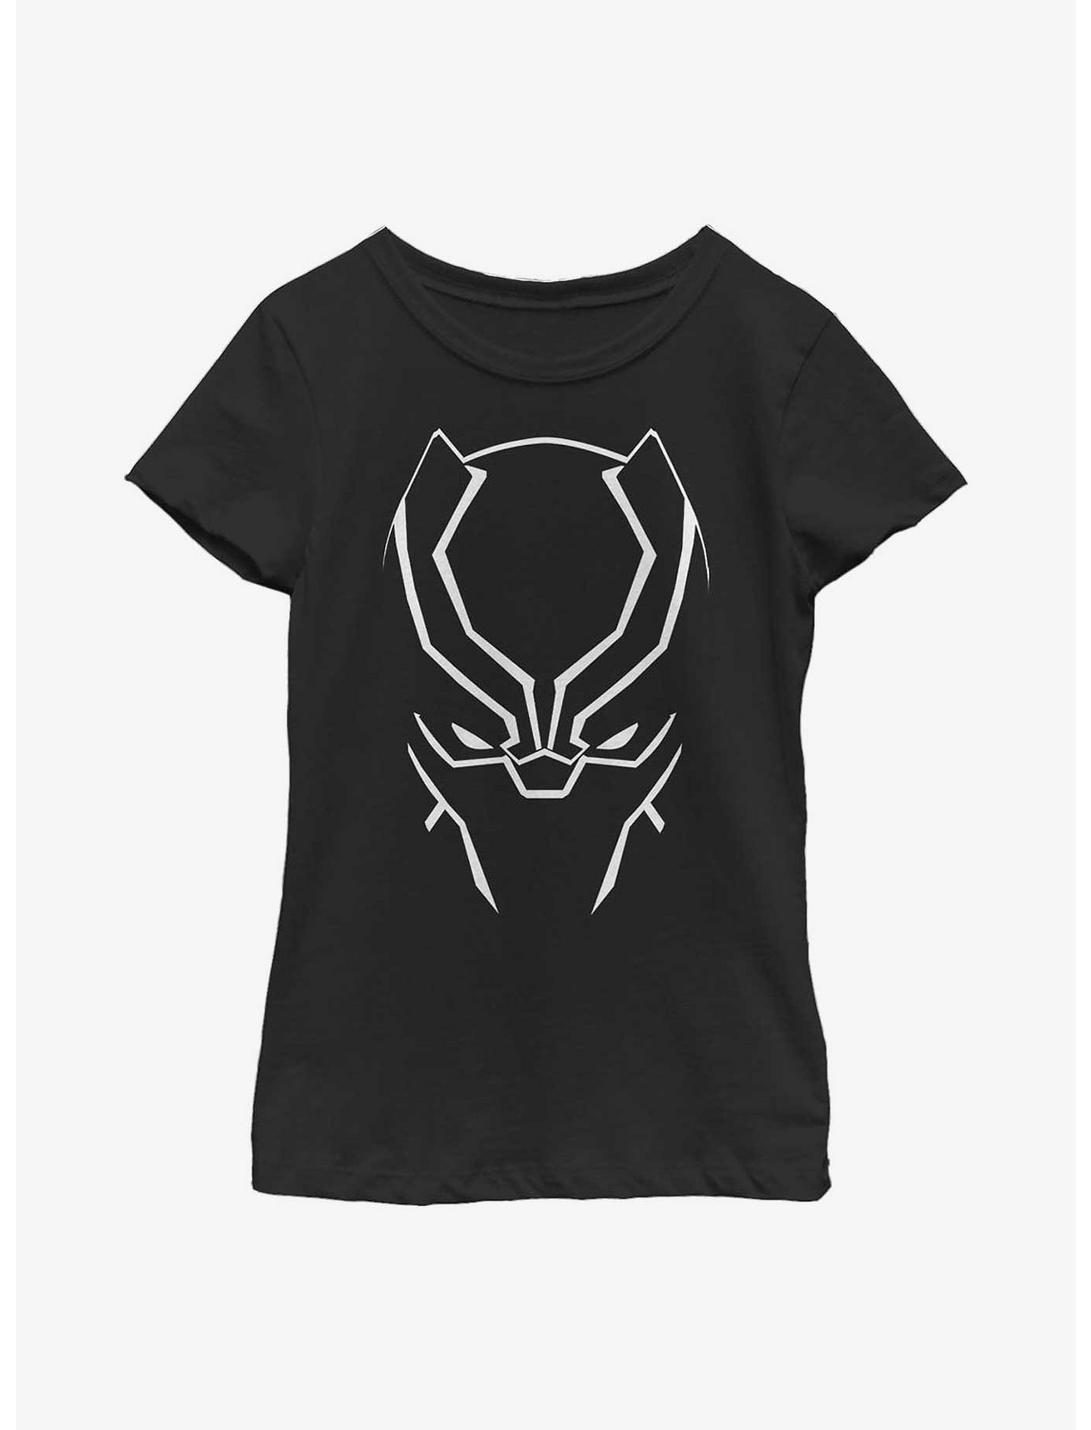 Marvel Black Panther Face Youth Girls T-Shirt, BLACK, hi-res